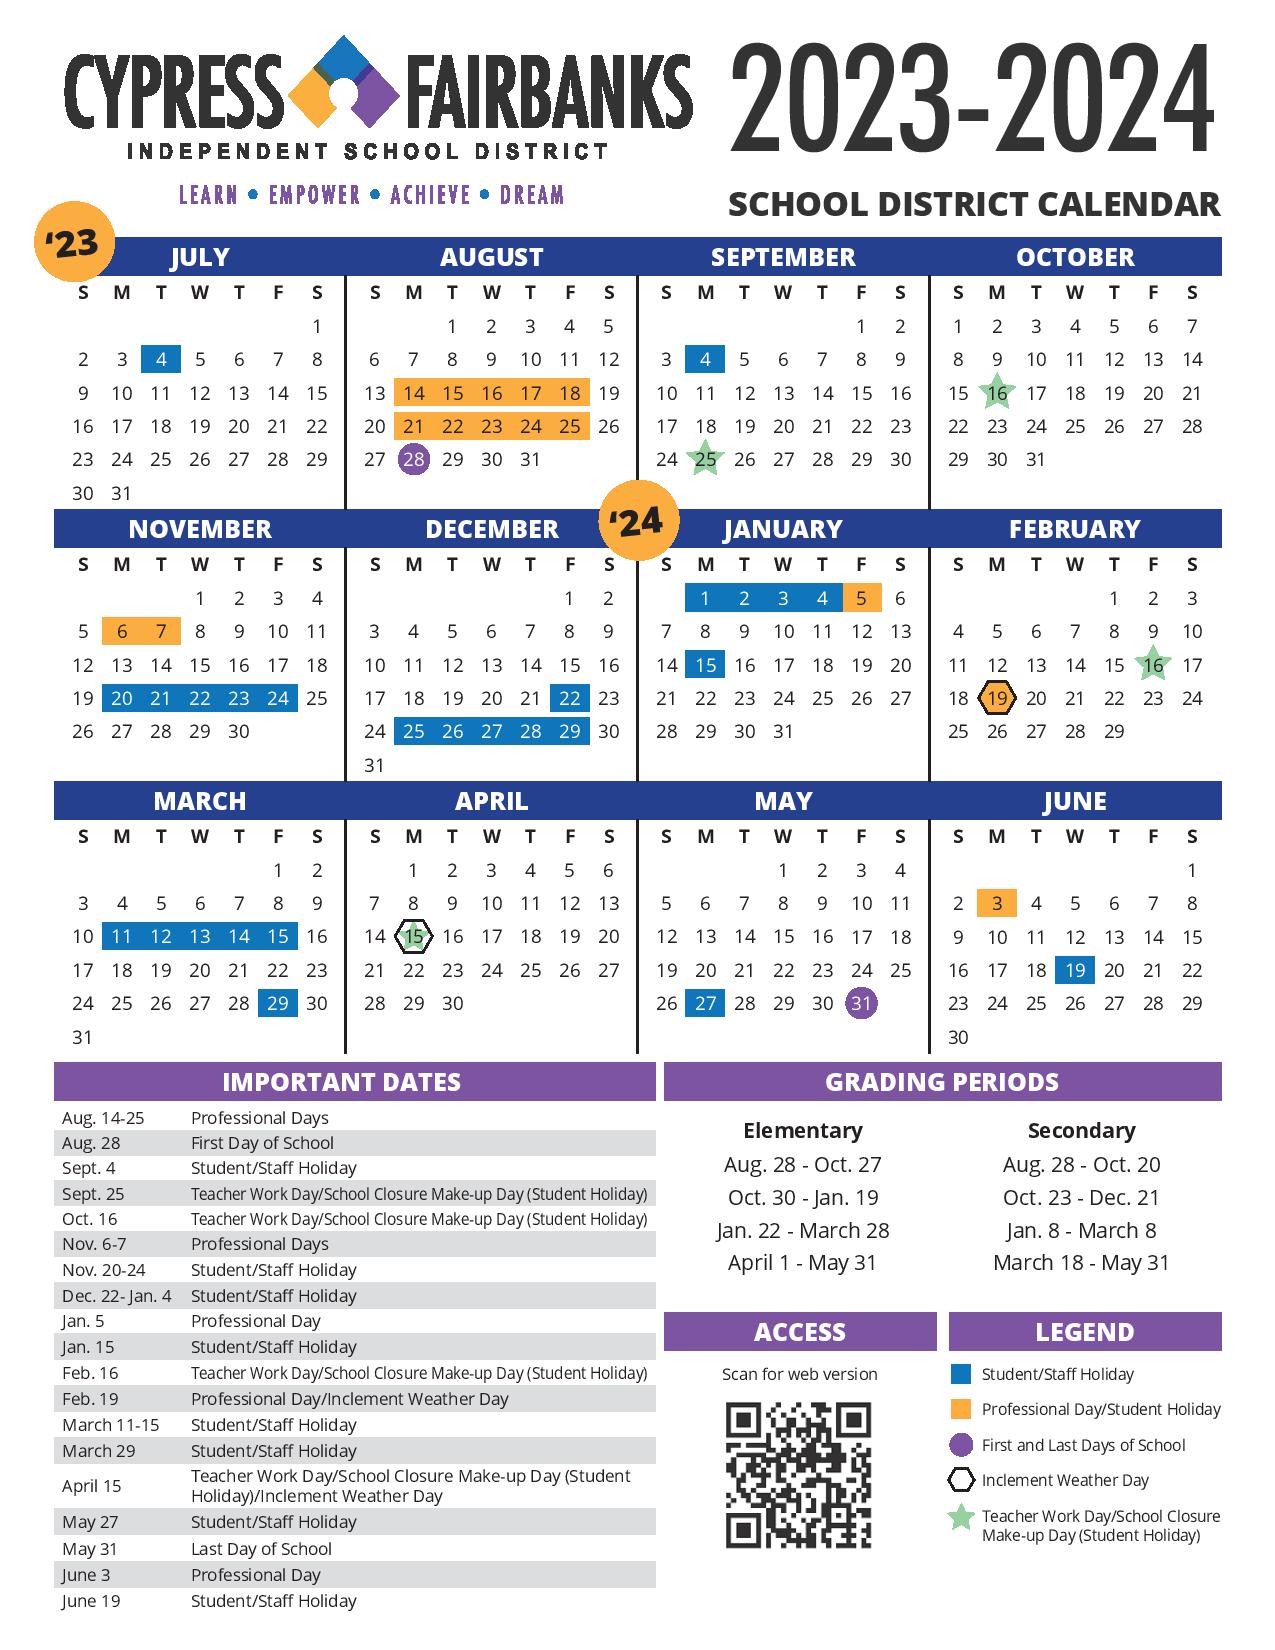 CypressFairbanks Independent School District Calendar 20232024